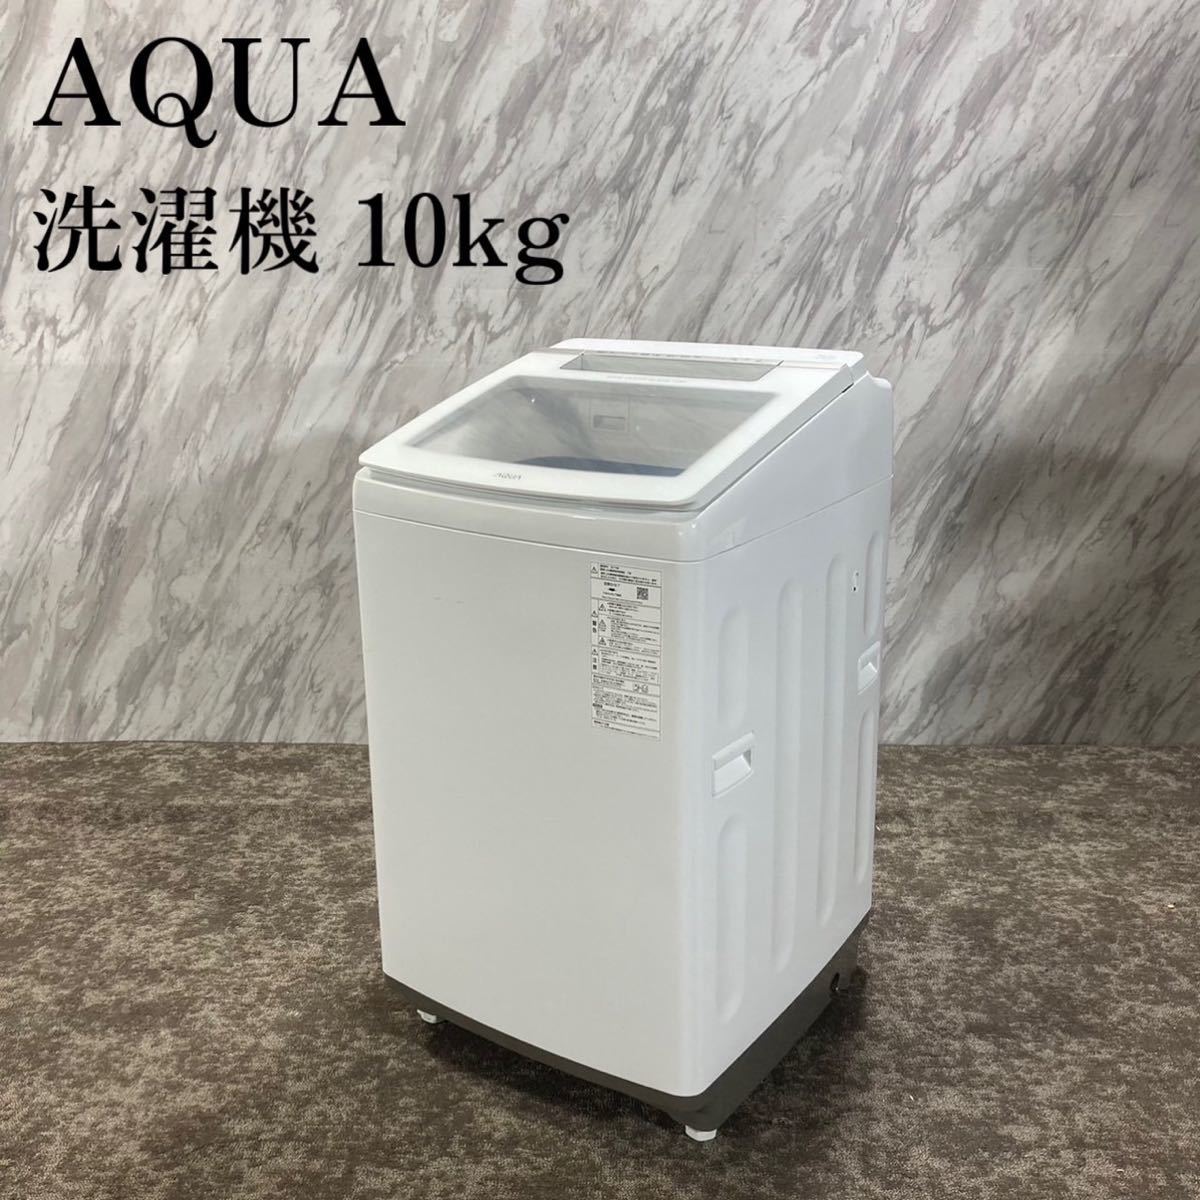 AQUA 洗濯機 AQW-GV100H 10kg 2019年製 家電 E580